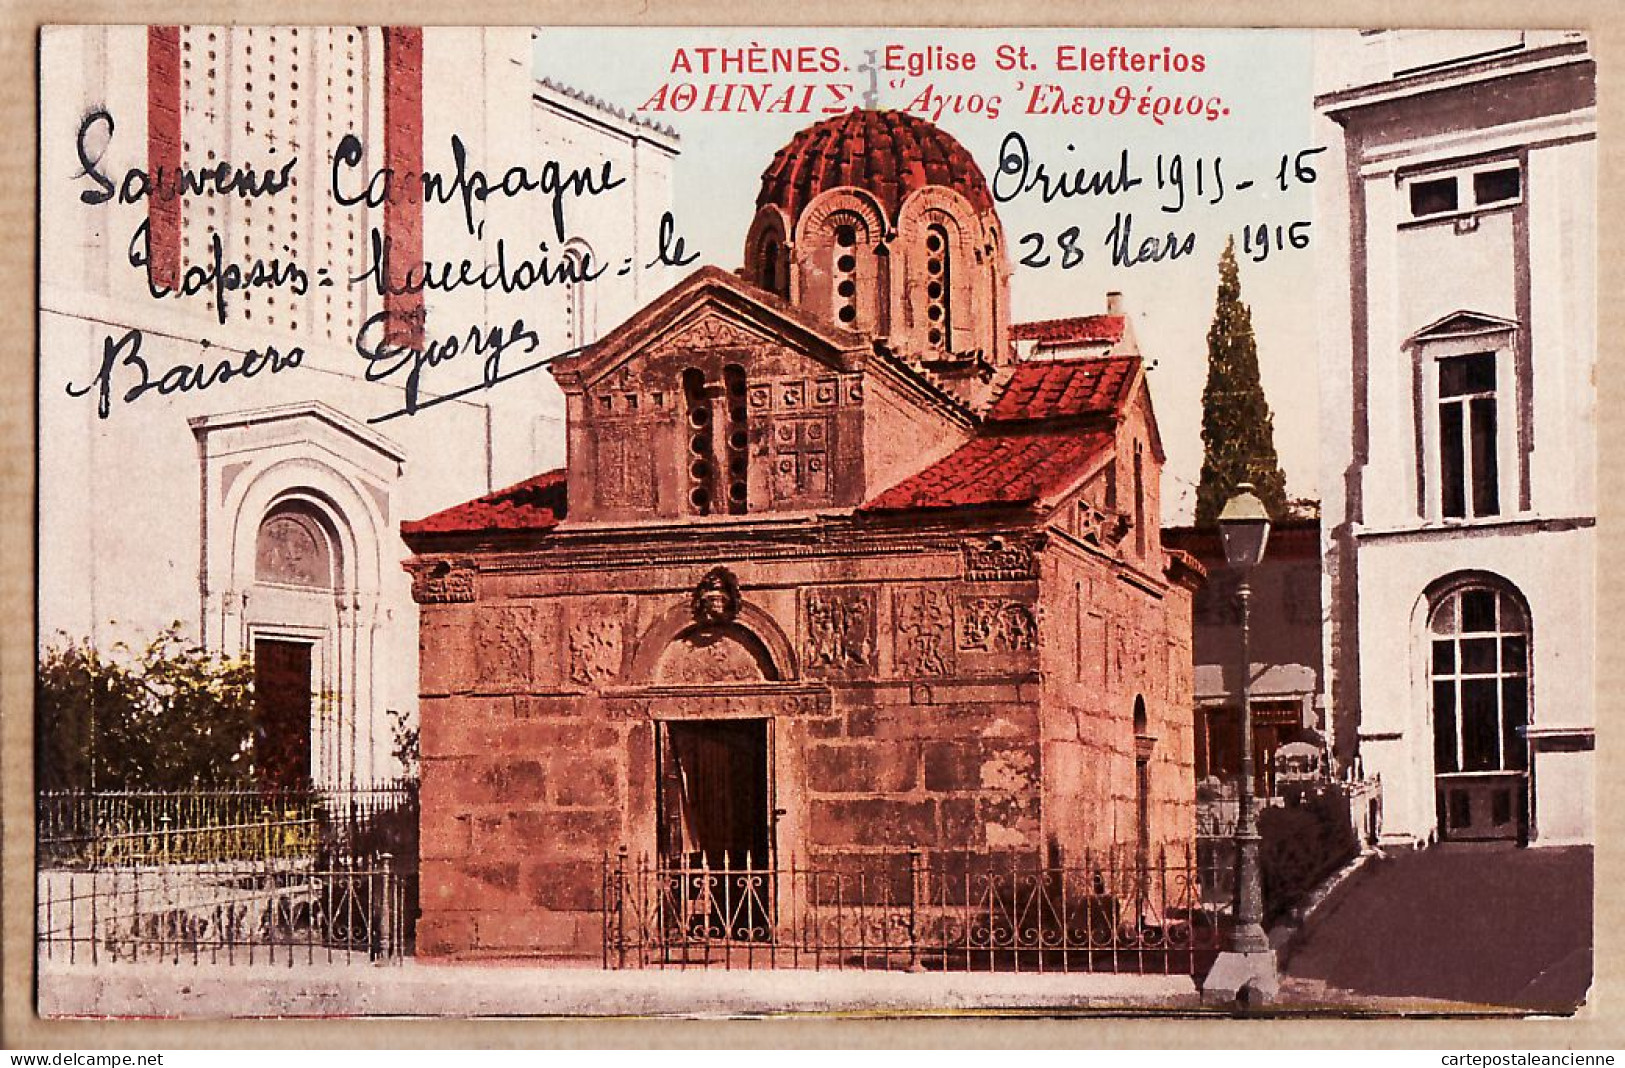 06404 / Lisez Souvenir De CAMPAGNE ORIENT 1915-16 De TOPSIN Macédoine 28 Mars 1916  ATHENES Eglise ELEFTERIOS CpaWW1 - Griekenland